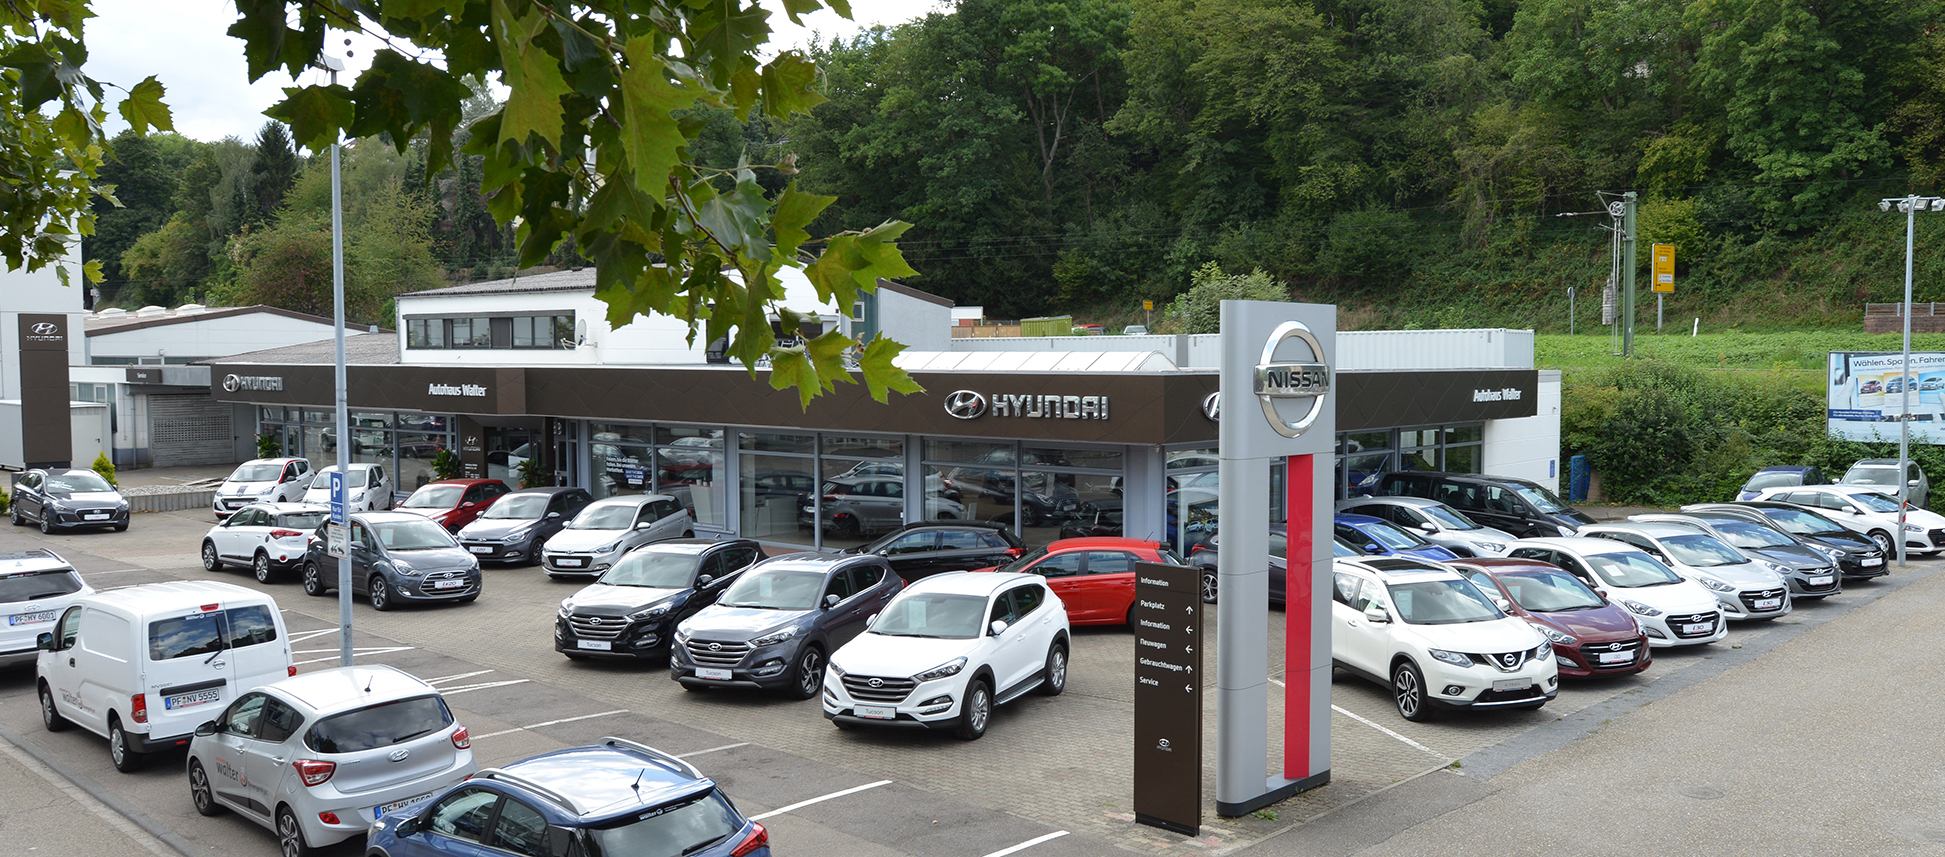 Autohaus Walter setzt im Markenumfeld Nissan und Hyundai auf FibuNet